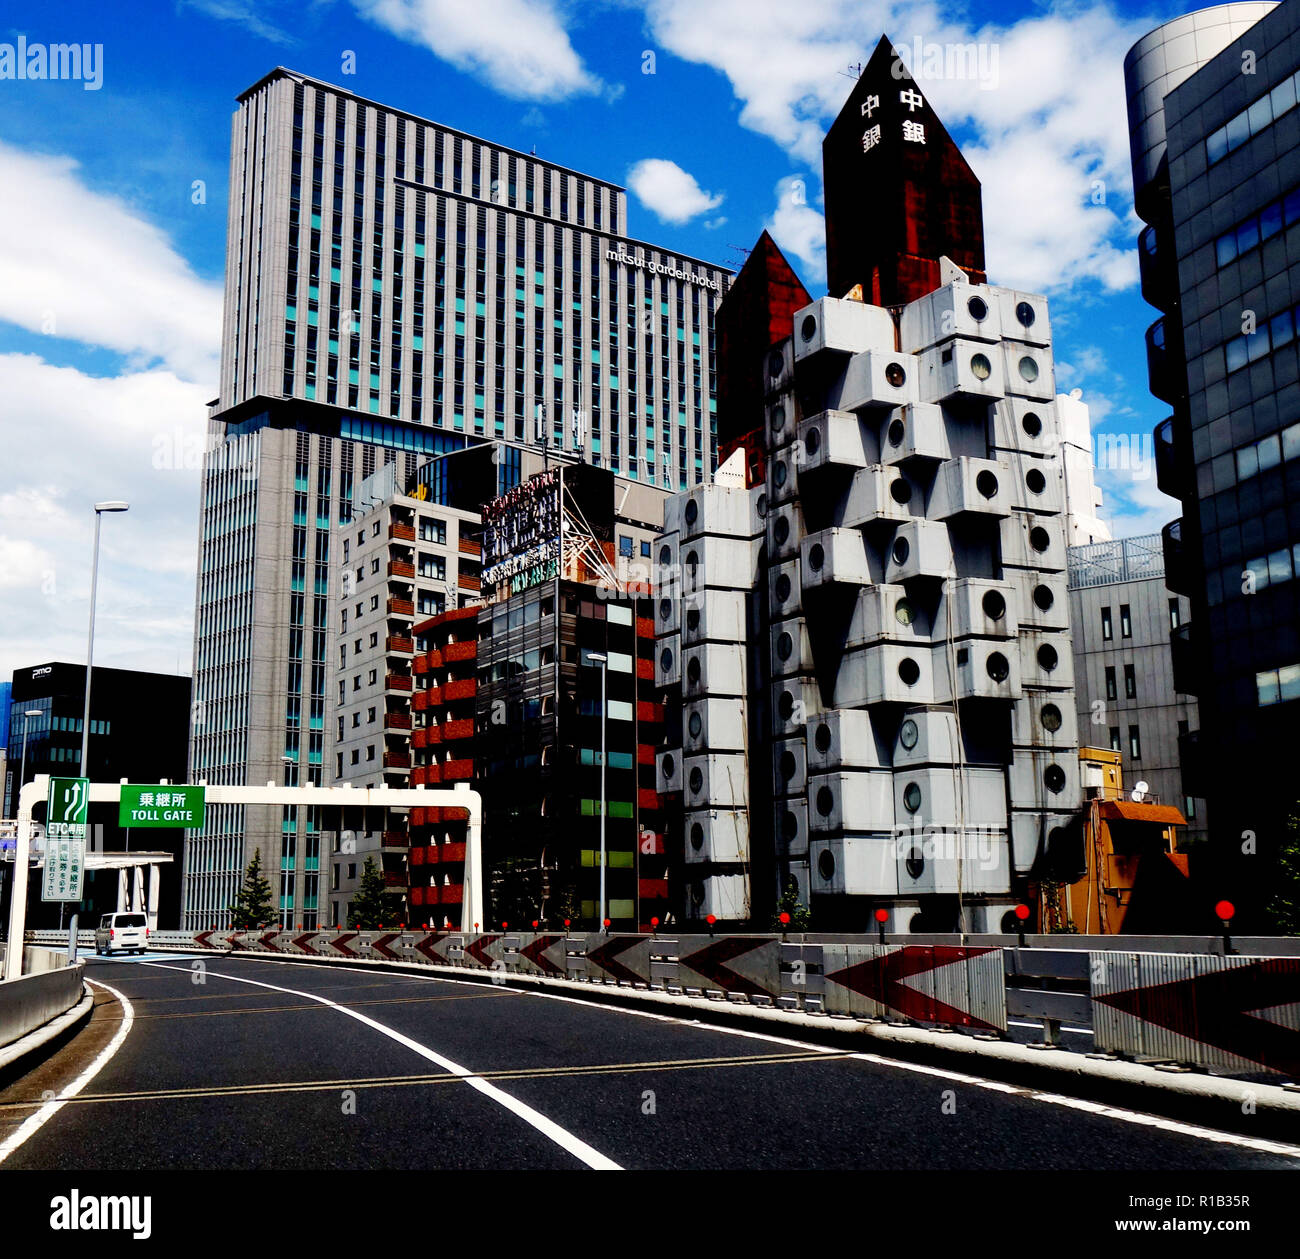 La conduite sur autoroute à passé Nakagin Capsule Tower, Ginza, Tokyo, Japon. Pas de PR Banque D'Images